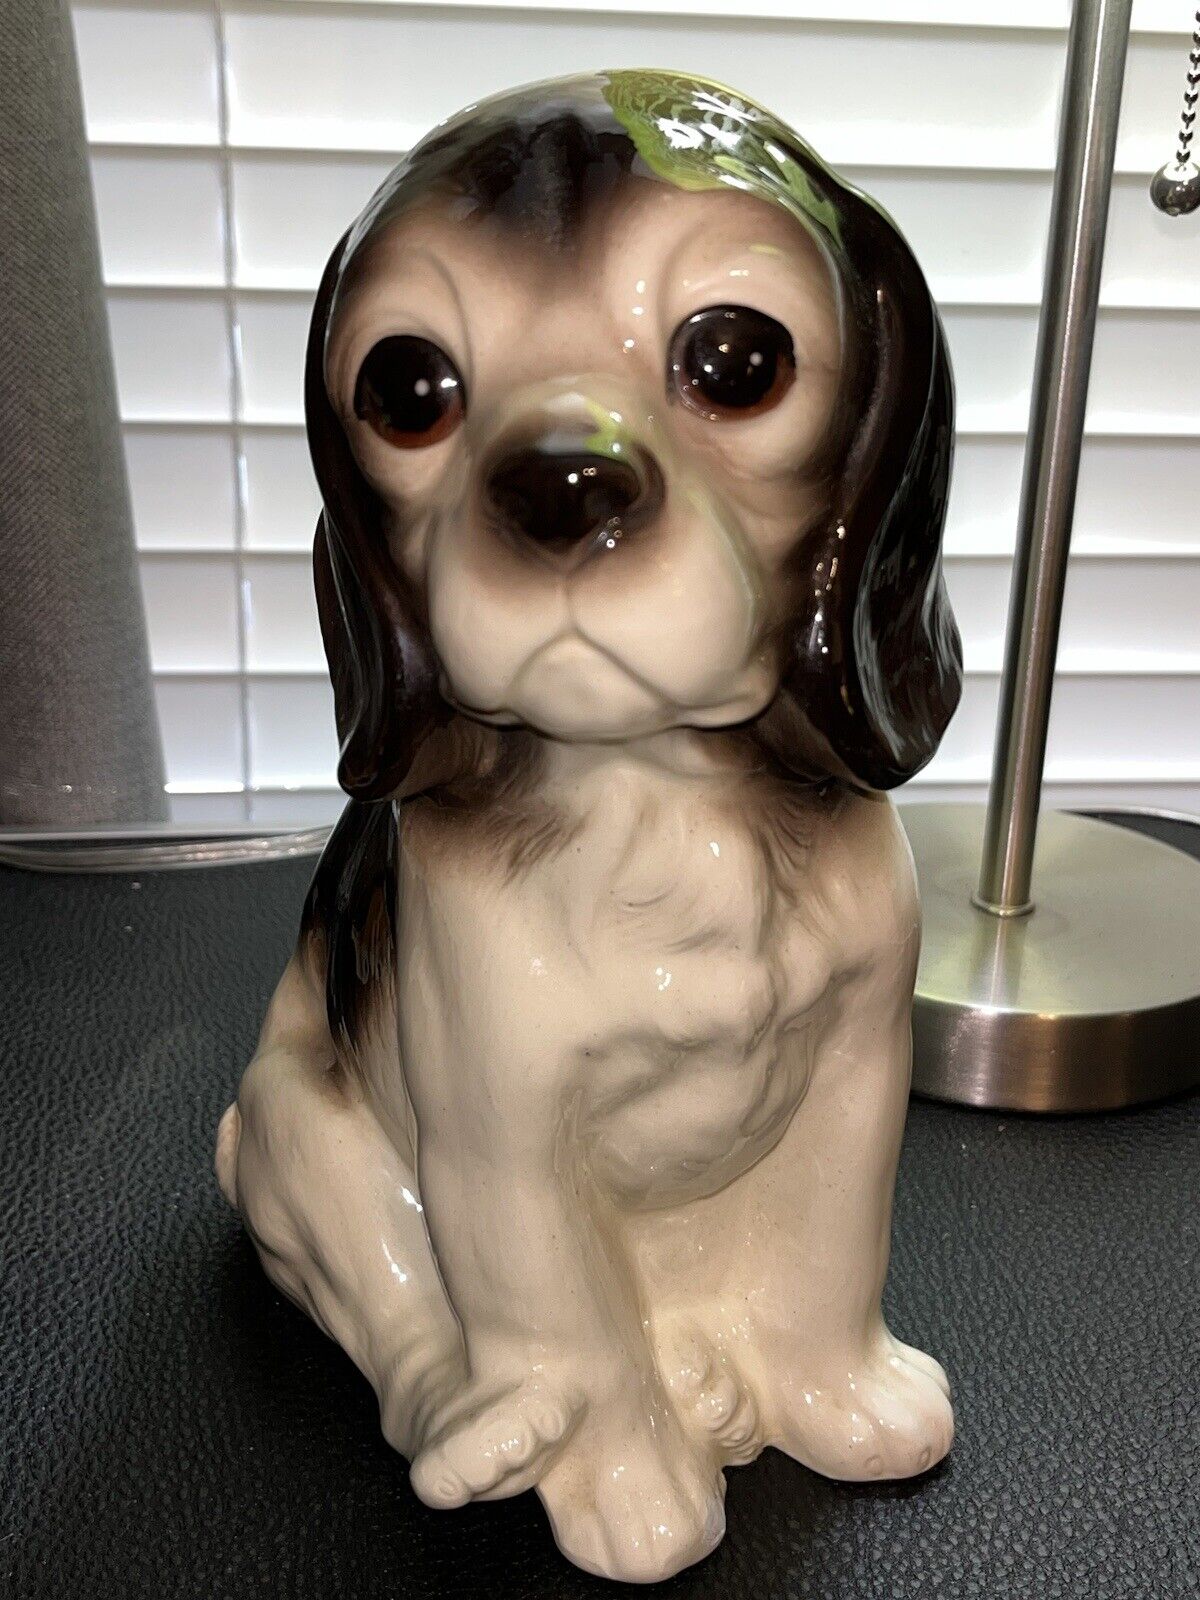 1988 VTG SIGNED OOAK Beagle Dog Statue Puppy Handmade Ceramic Porcelain Glazed